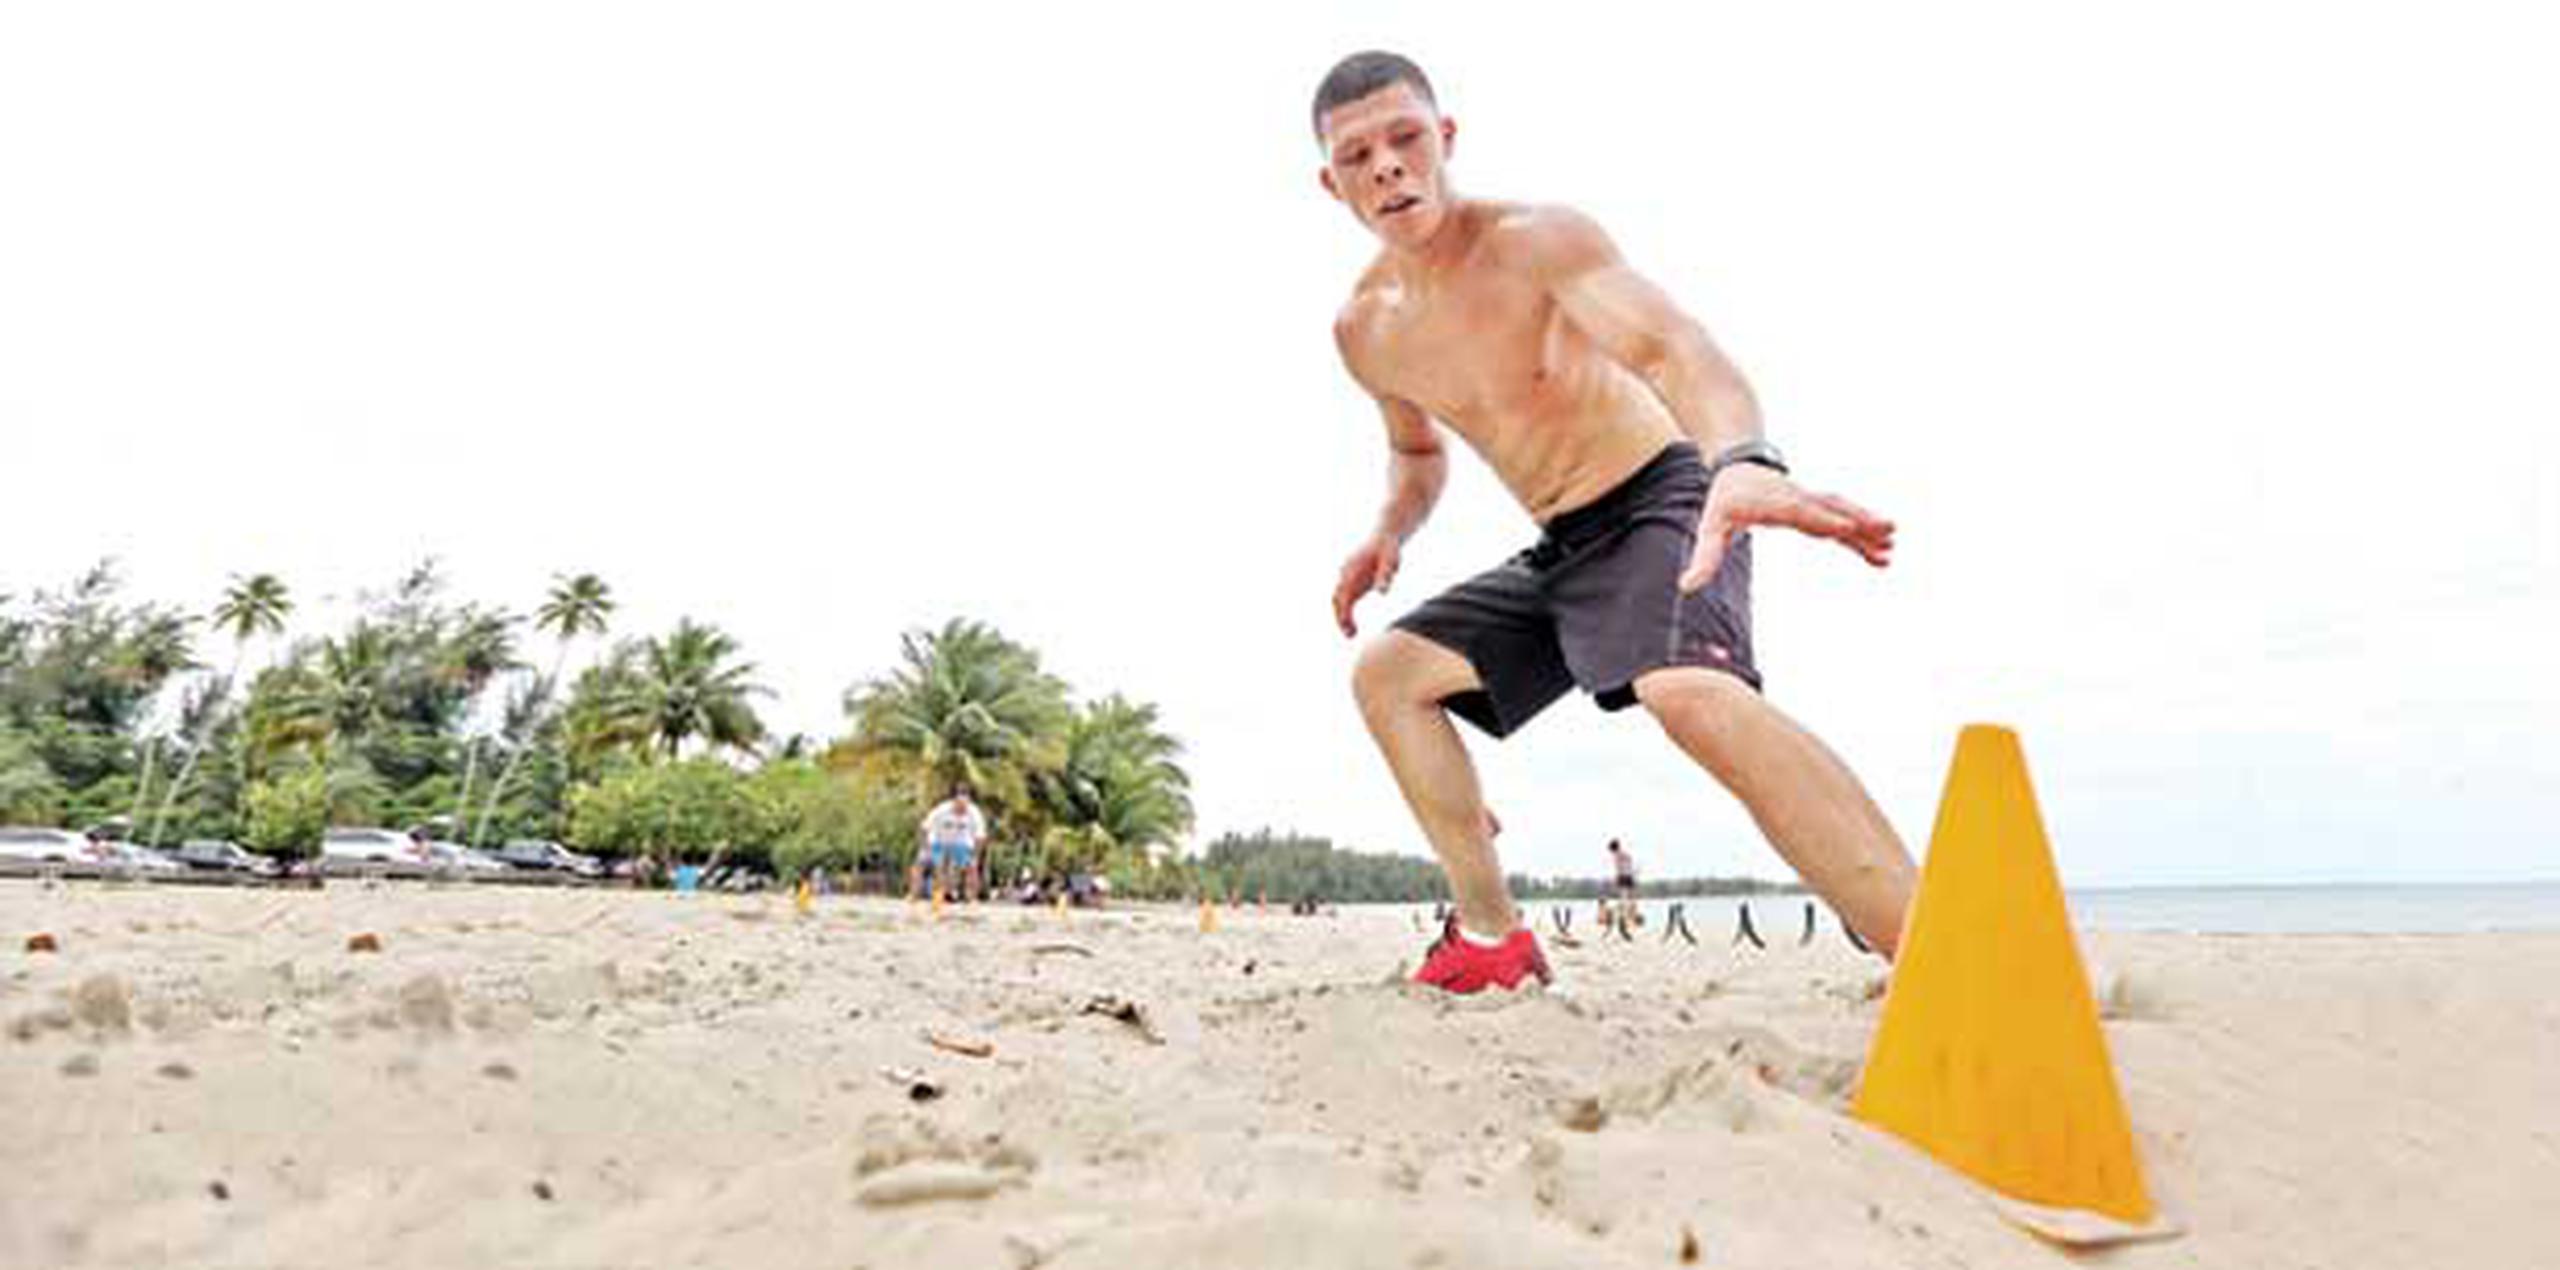 El programa de ejercicios de Román “Rocky”  Martínez consiste en saltar vallas en la arena y trabajar en la velocidad de piernas. (juan.martinez@gfrmedia.com)